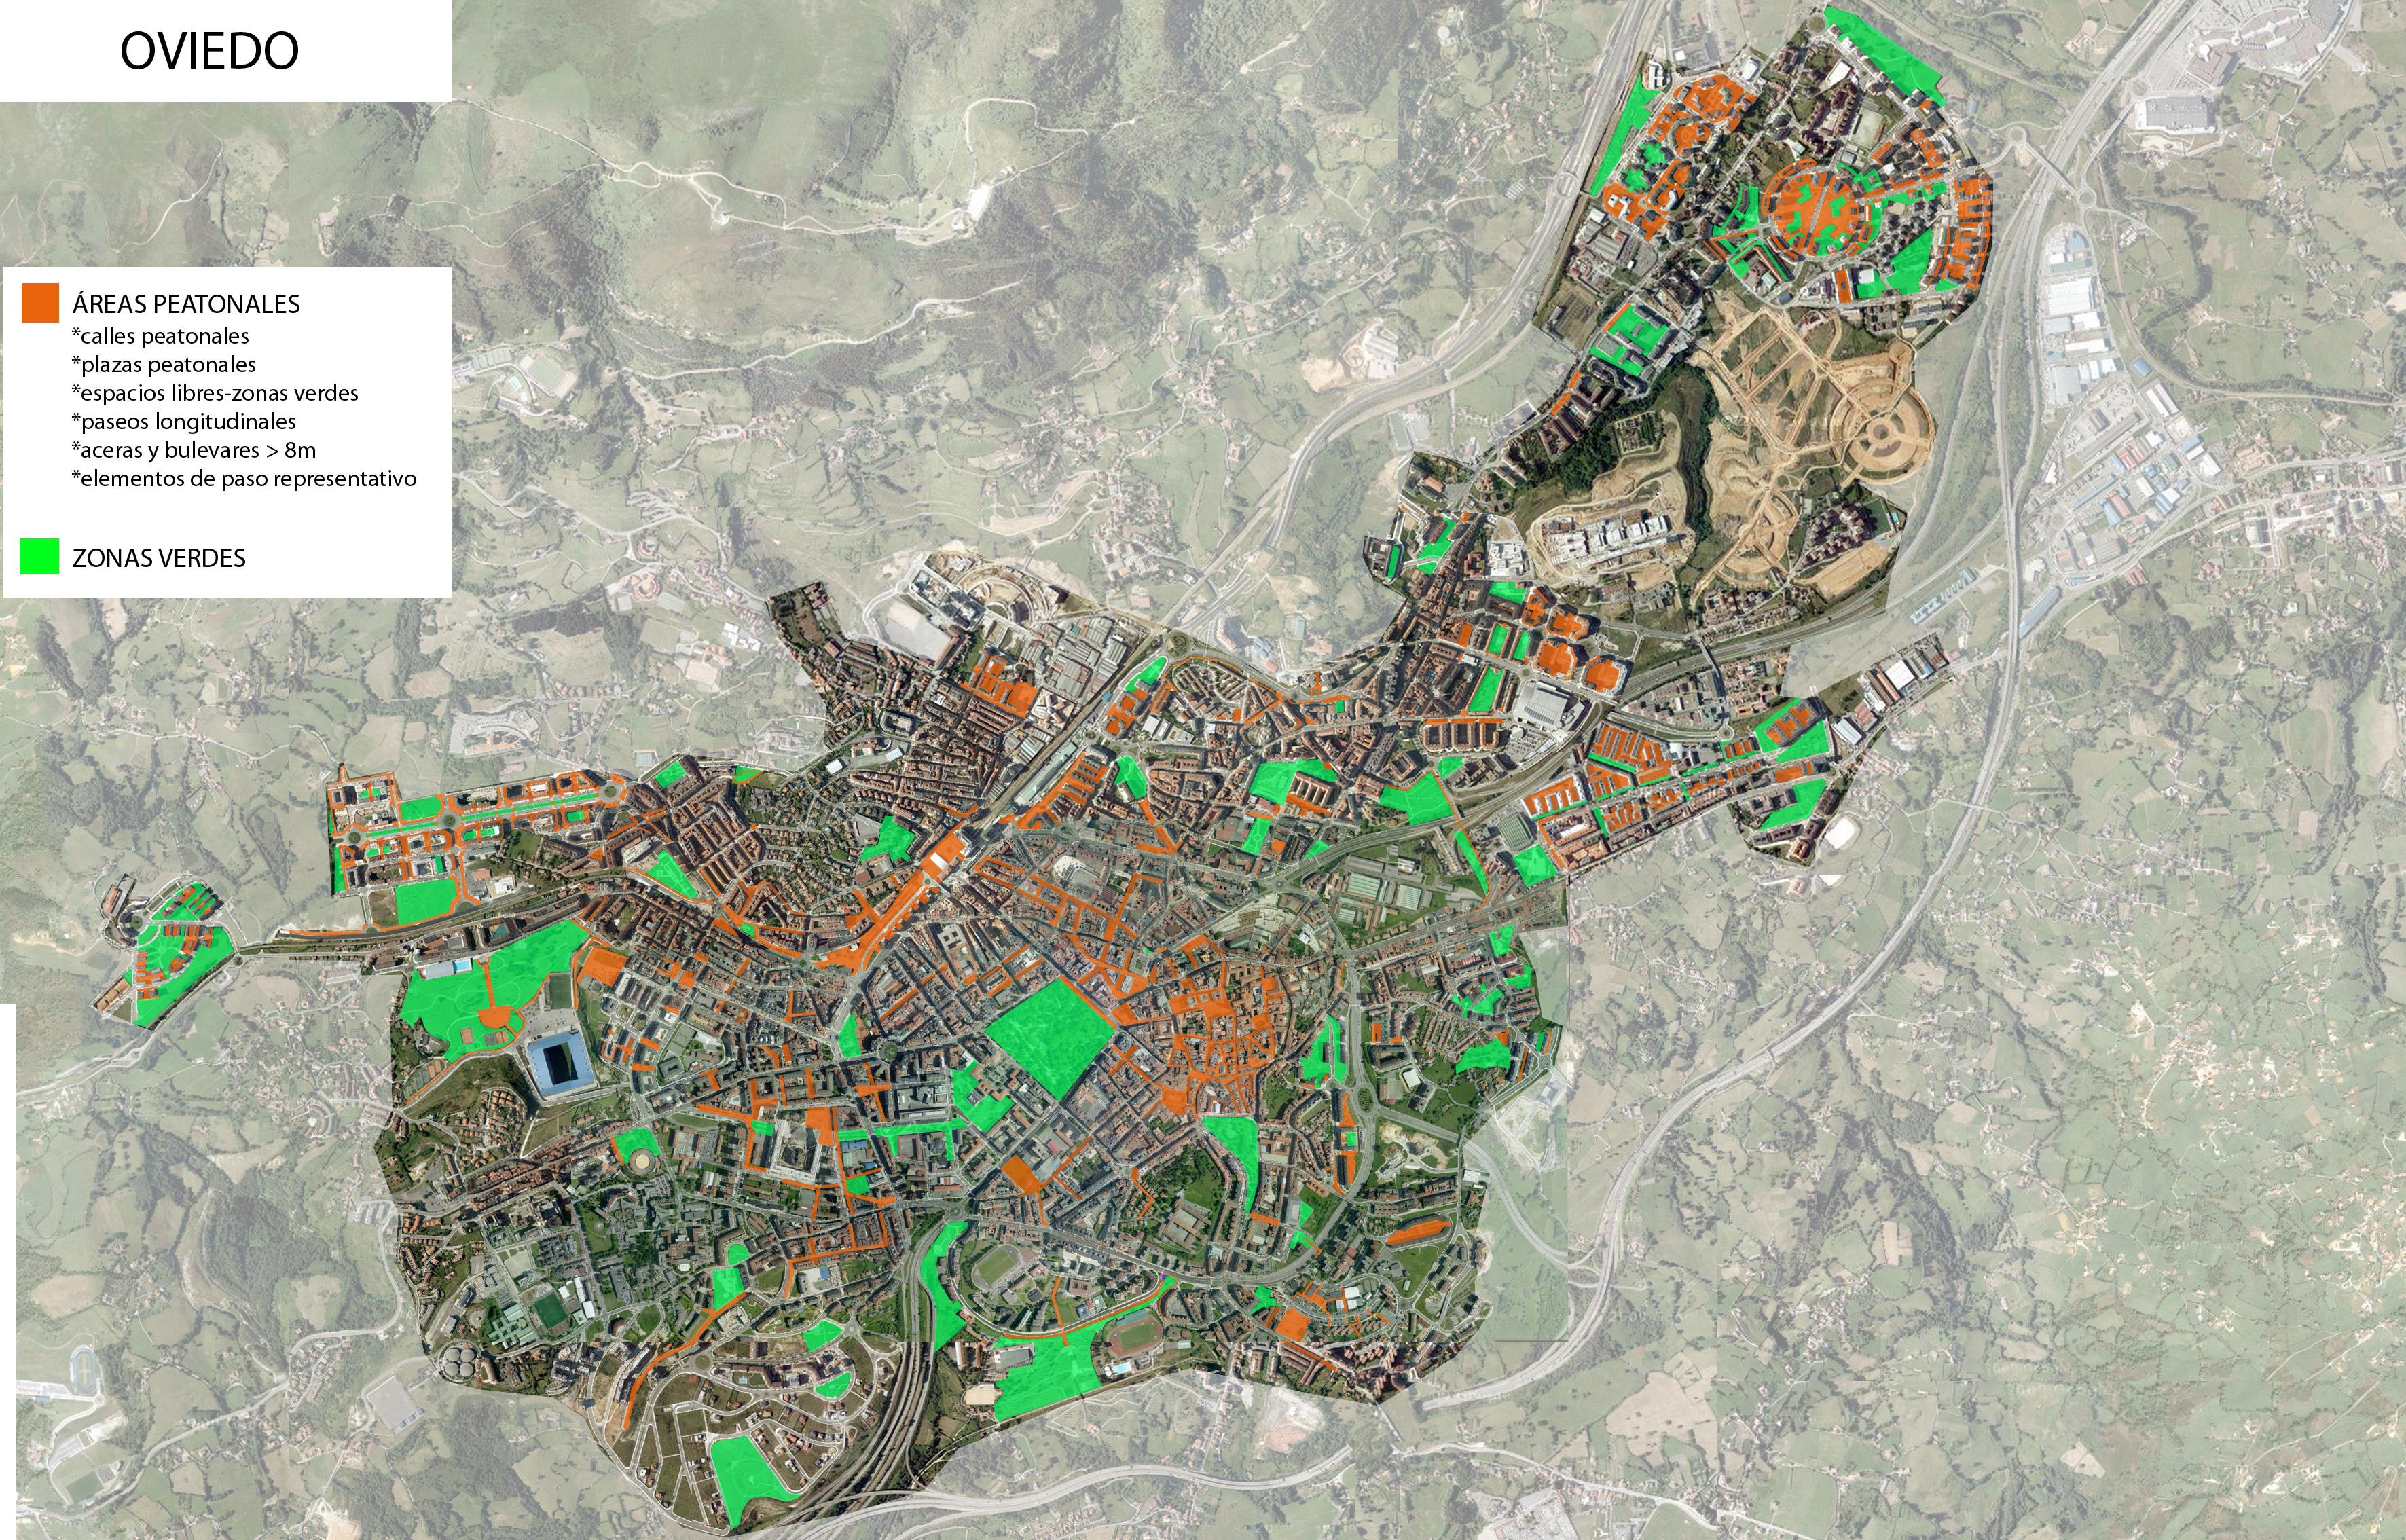 Áreas peatonales y zonas verdes de Oviedo